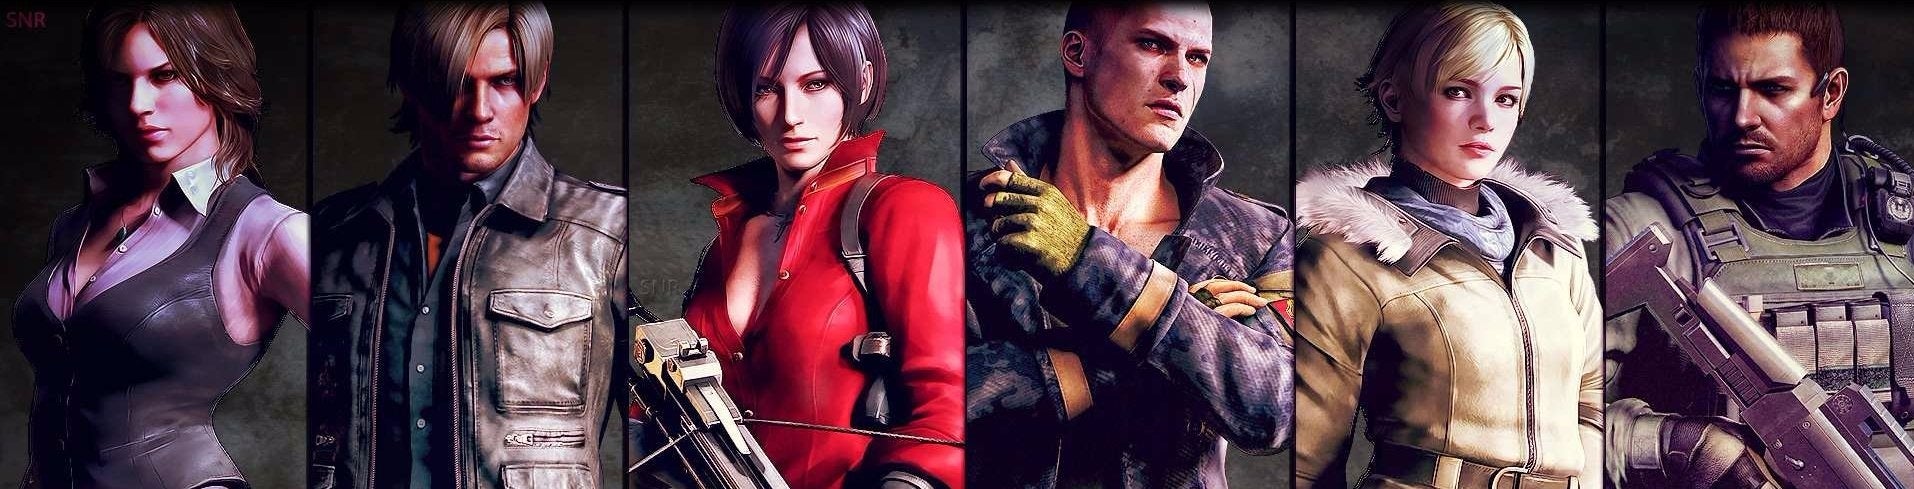 Imagen para ¿Vale la pena el nuevo Resident Evil 6 Remastered para PS4 y Xbox One?